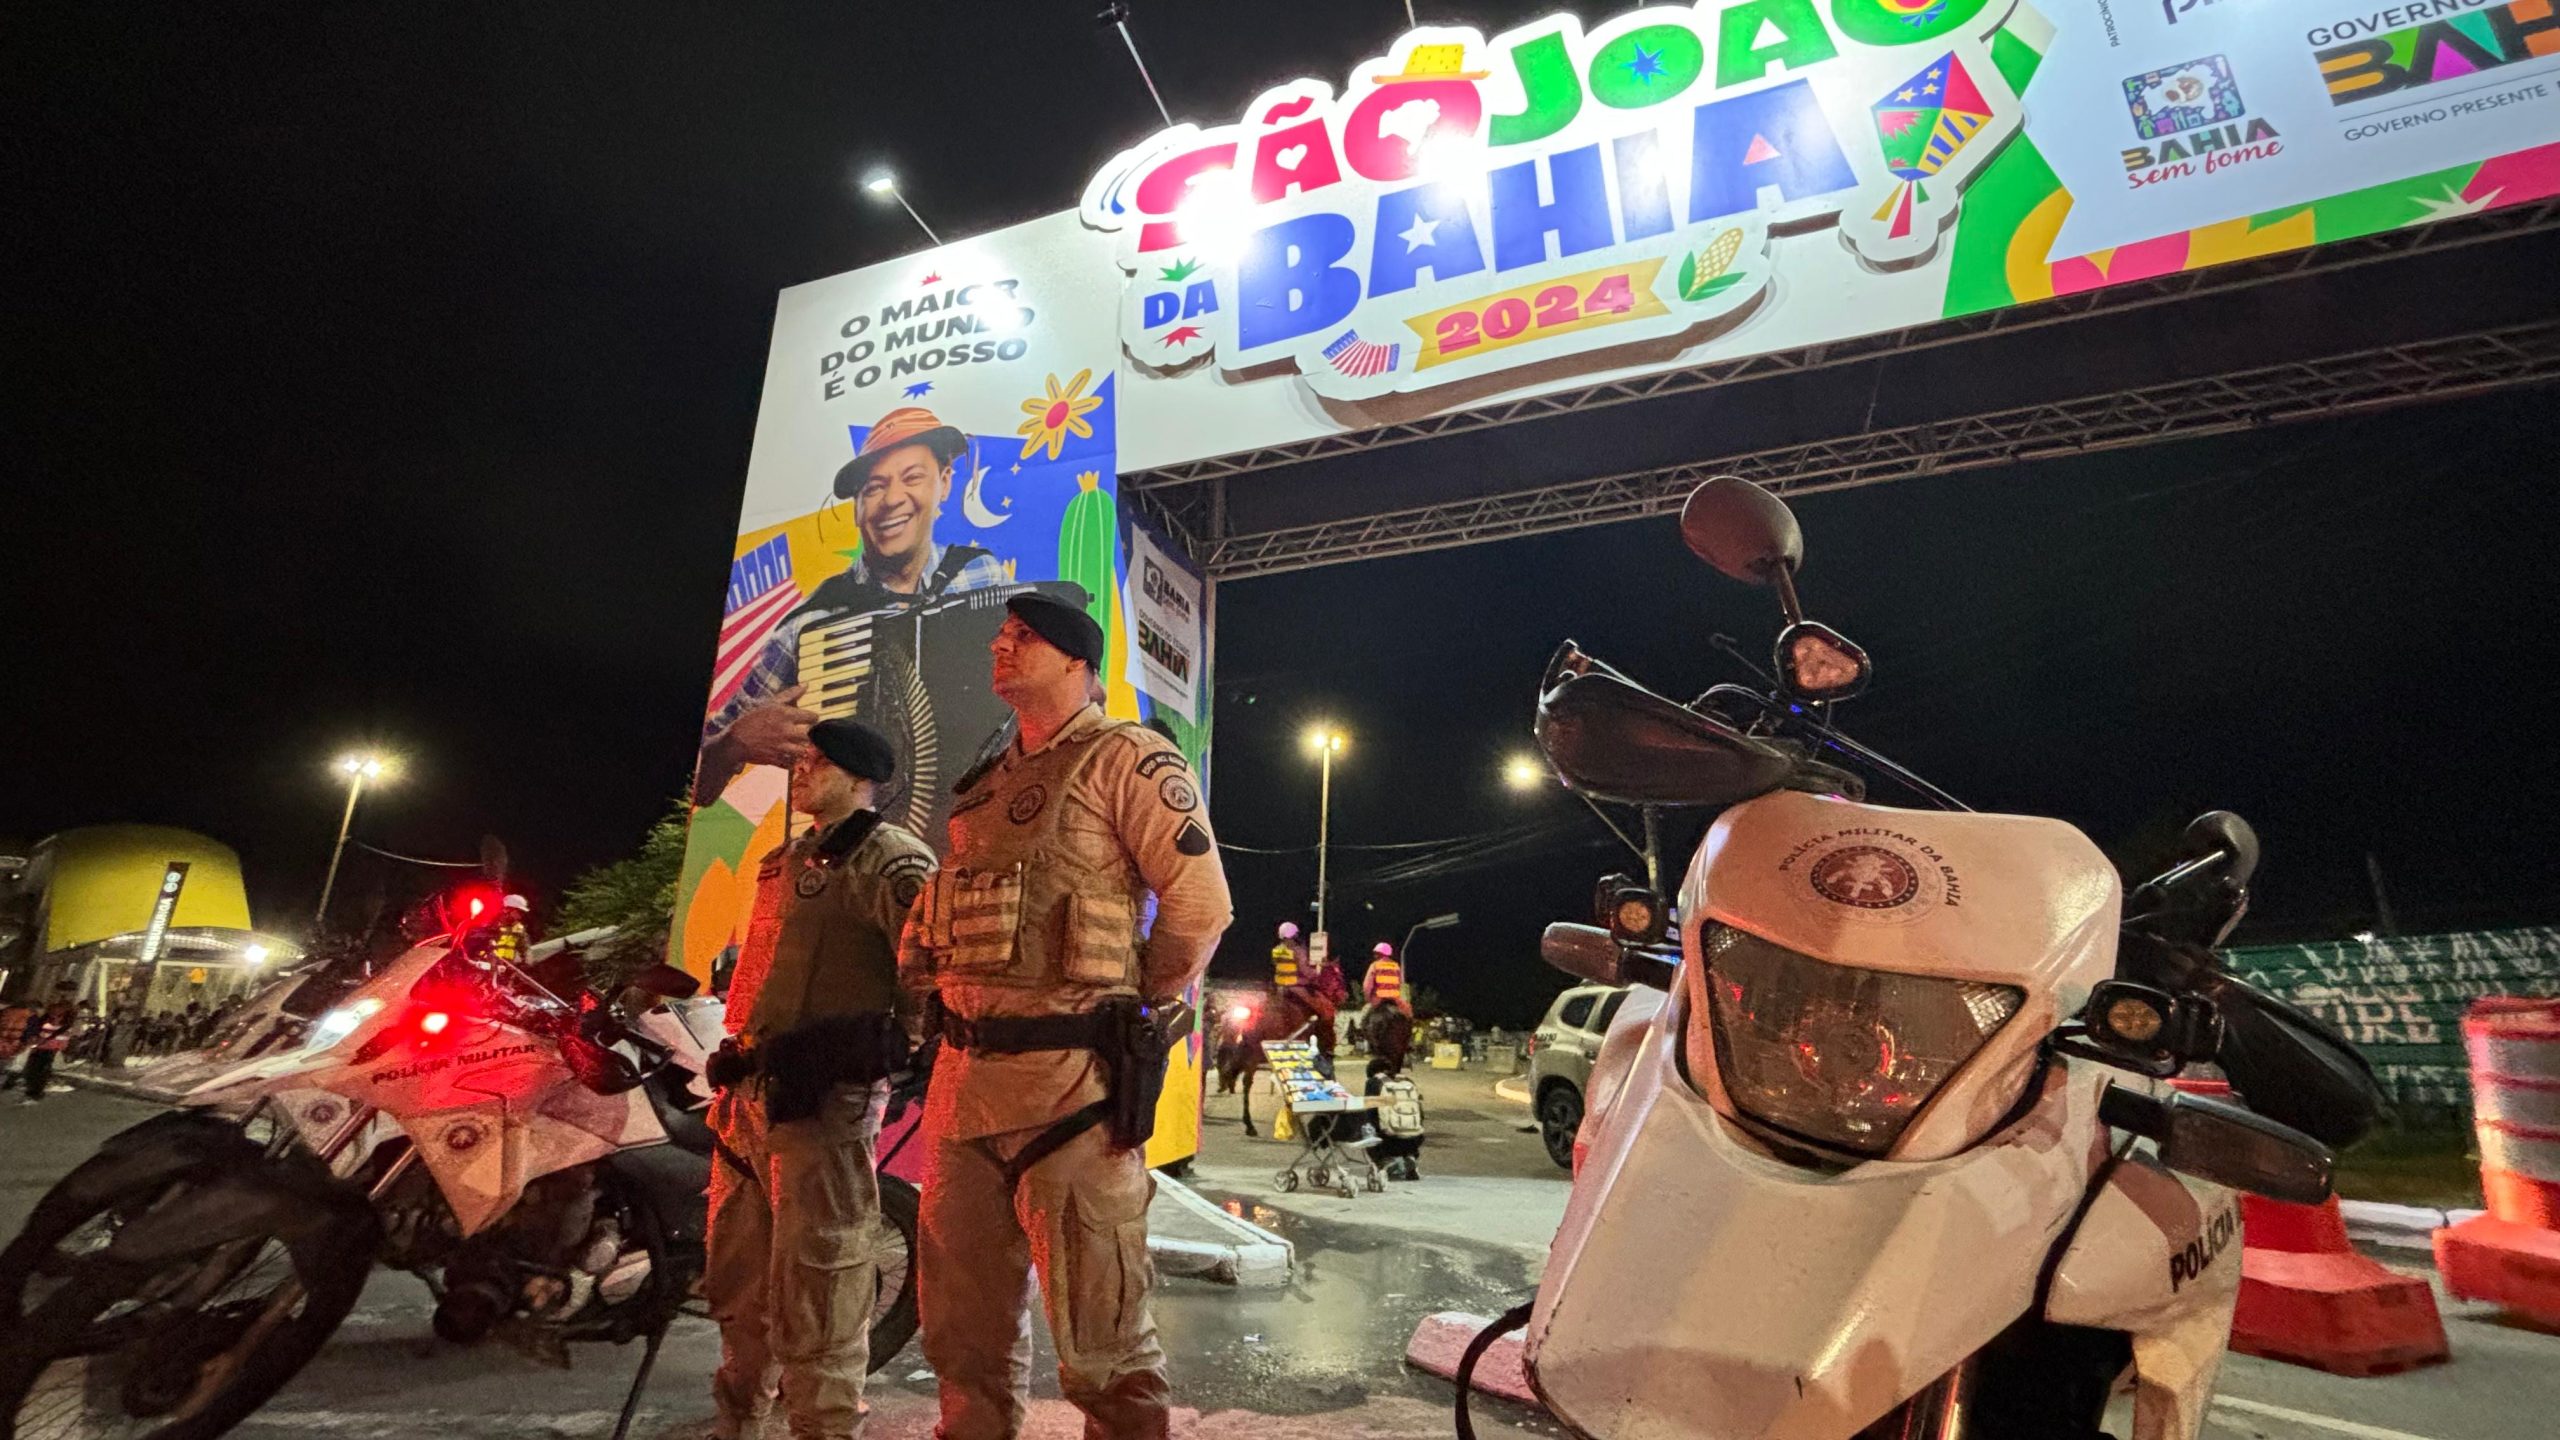 Capa: Reconhecimento Facial contabiliza 2,5 milhões de pessoas nas festas do São João da Bahia